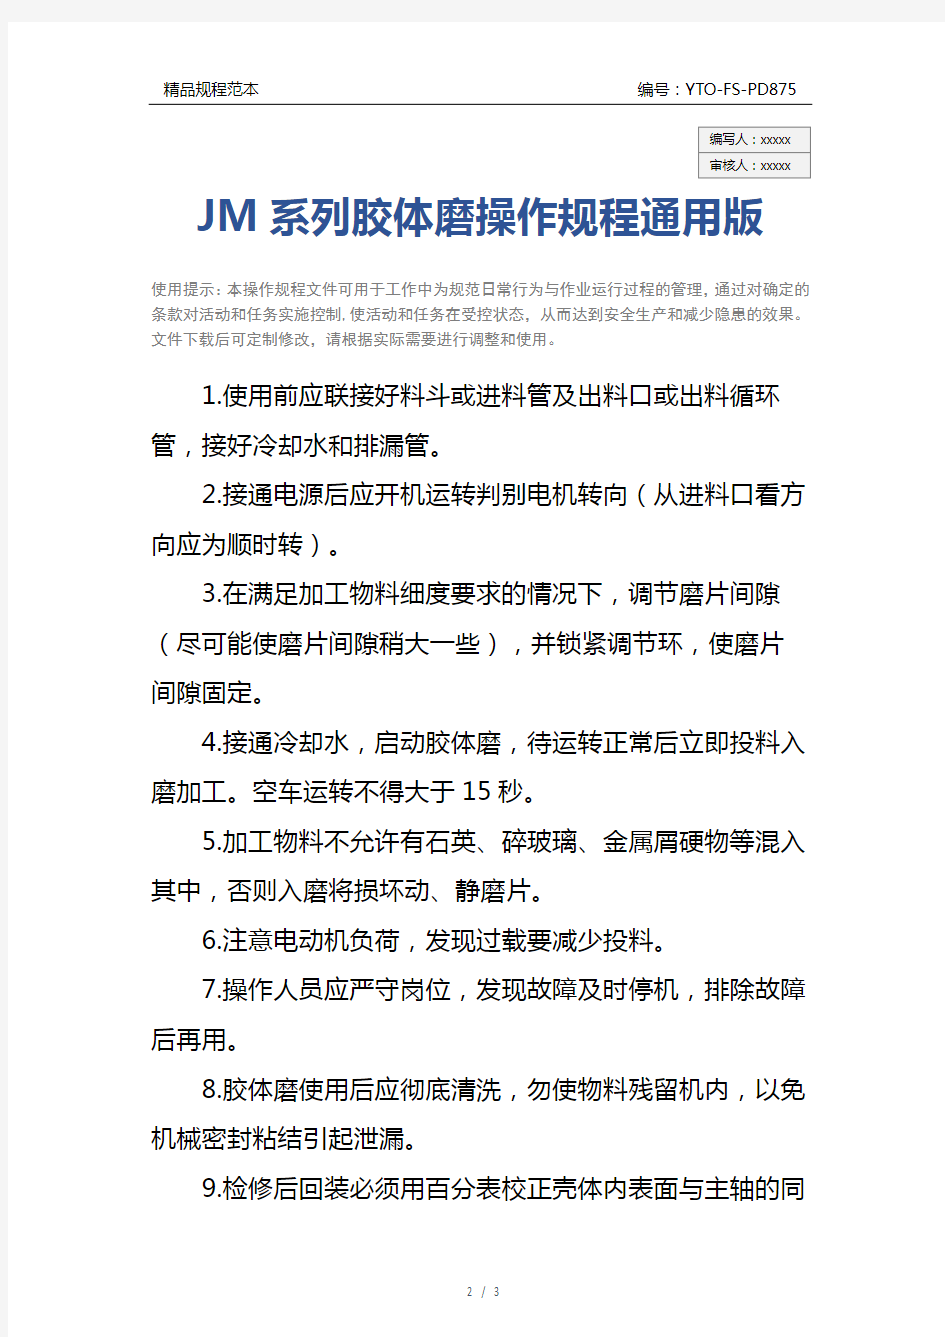 JM系列胶体磨操作规程通用版